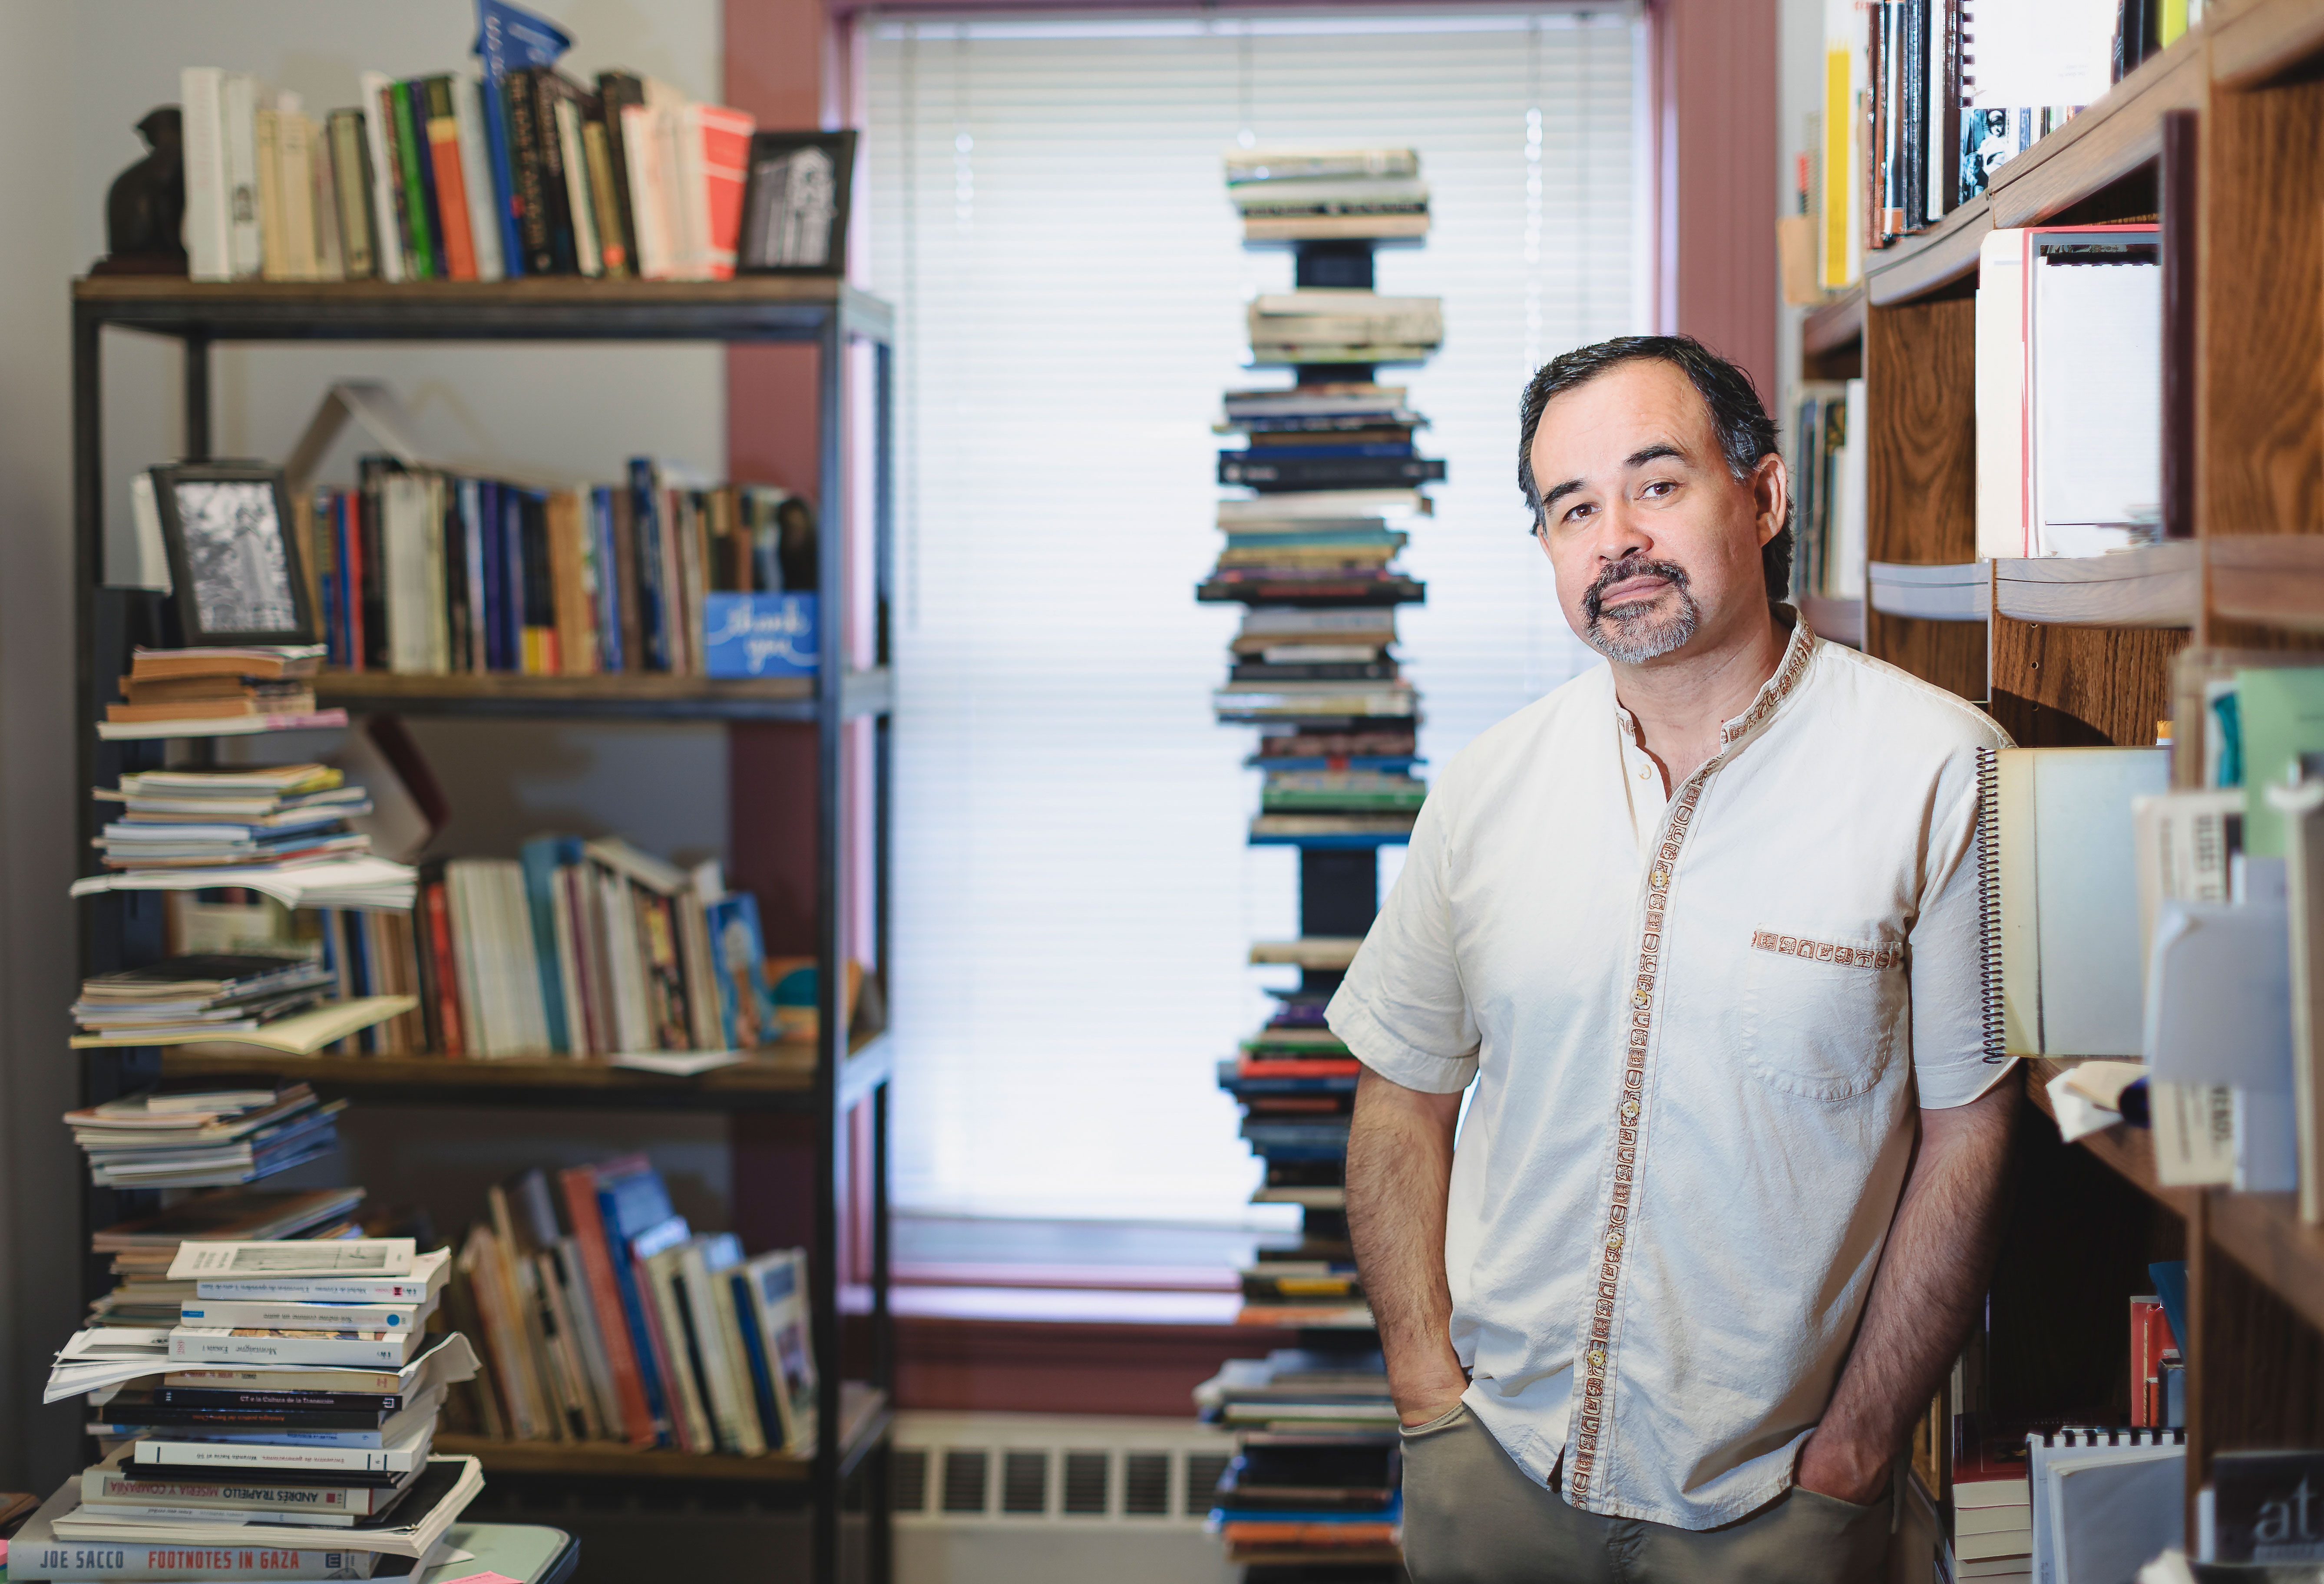 Cristián Gómez Olivares standing in his office amongst stacks of books and bookshelves